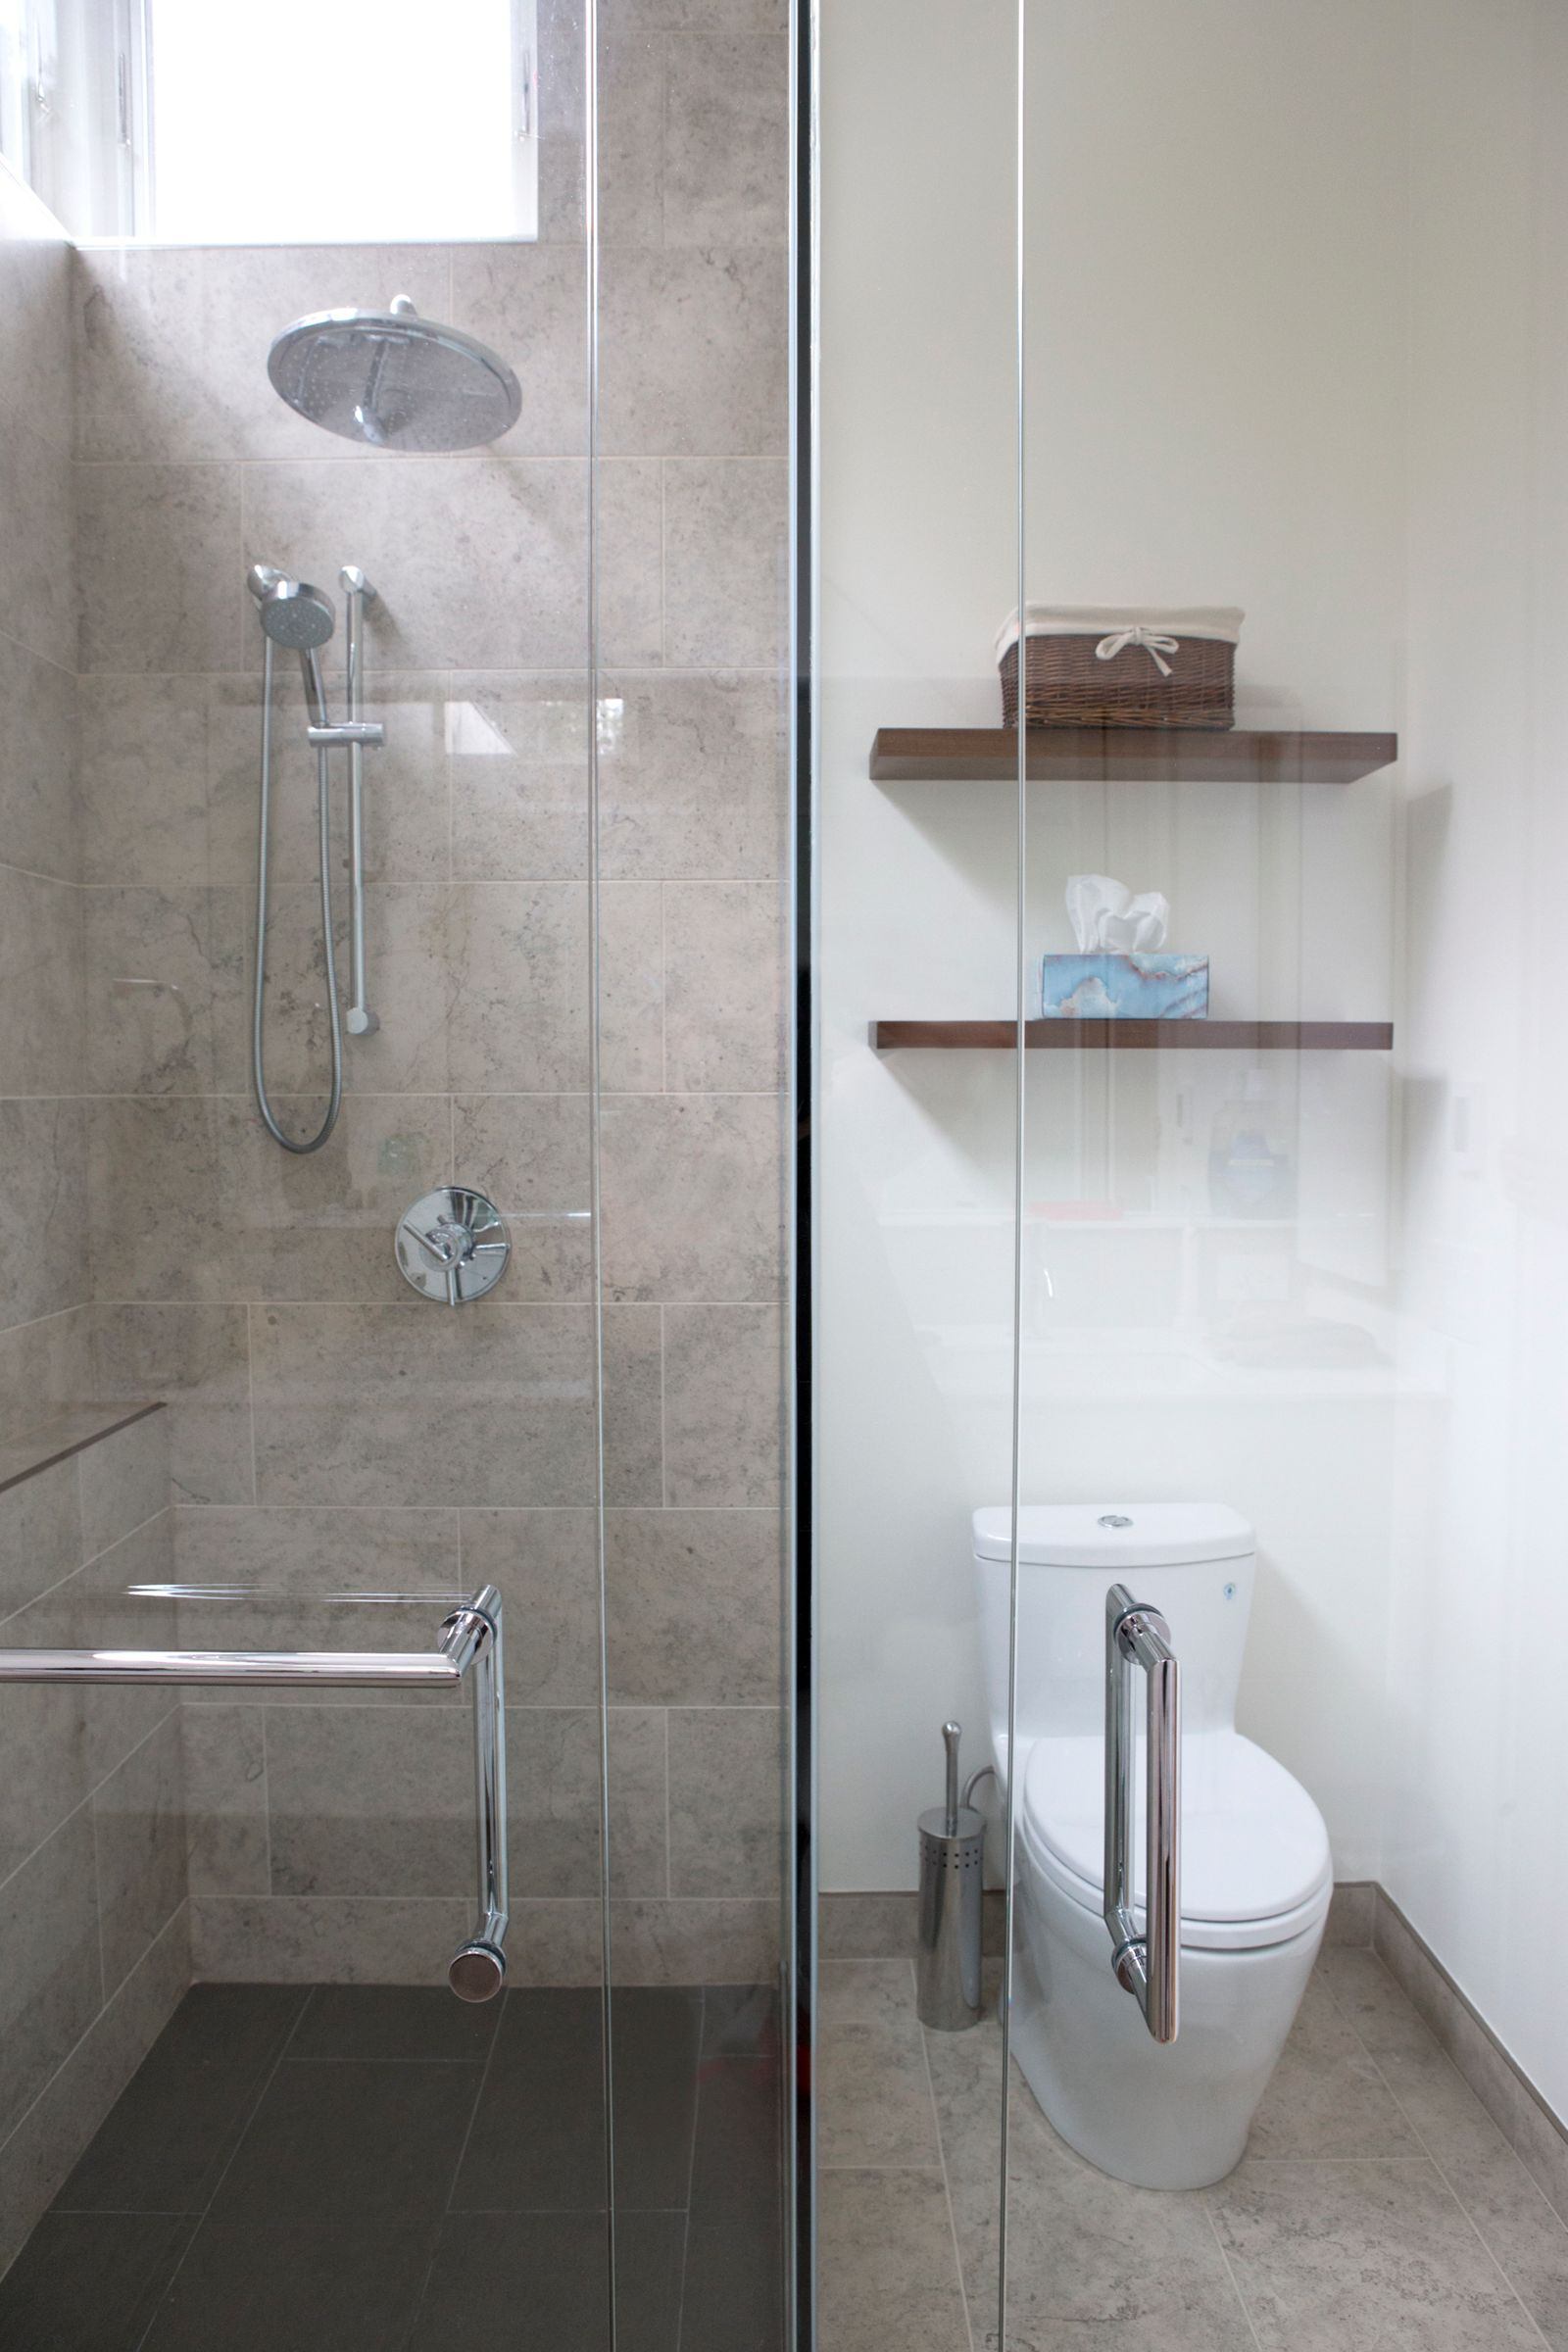 Walk-in shower behind glass door with large floor tiling